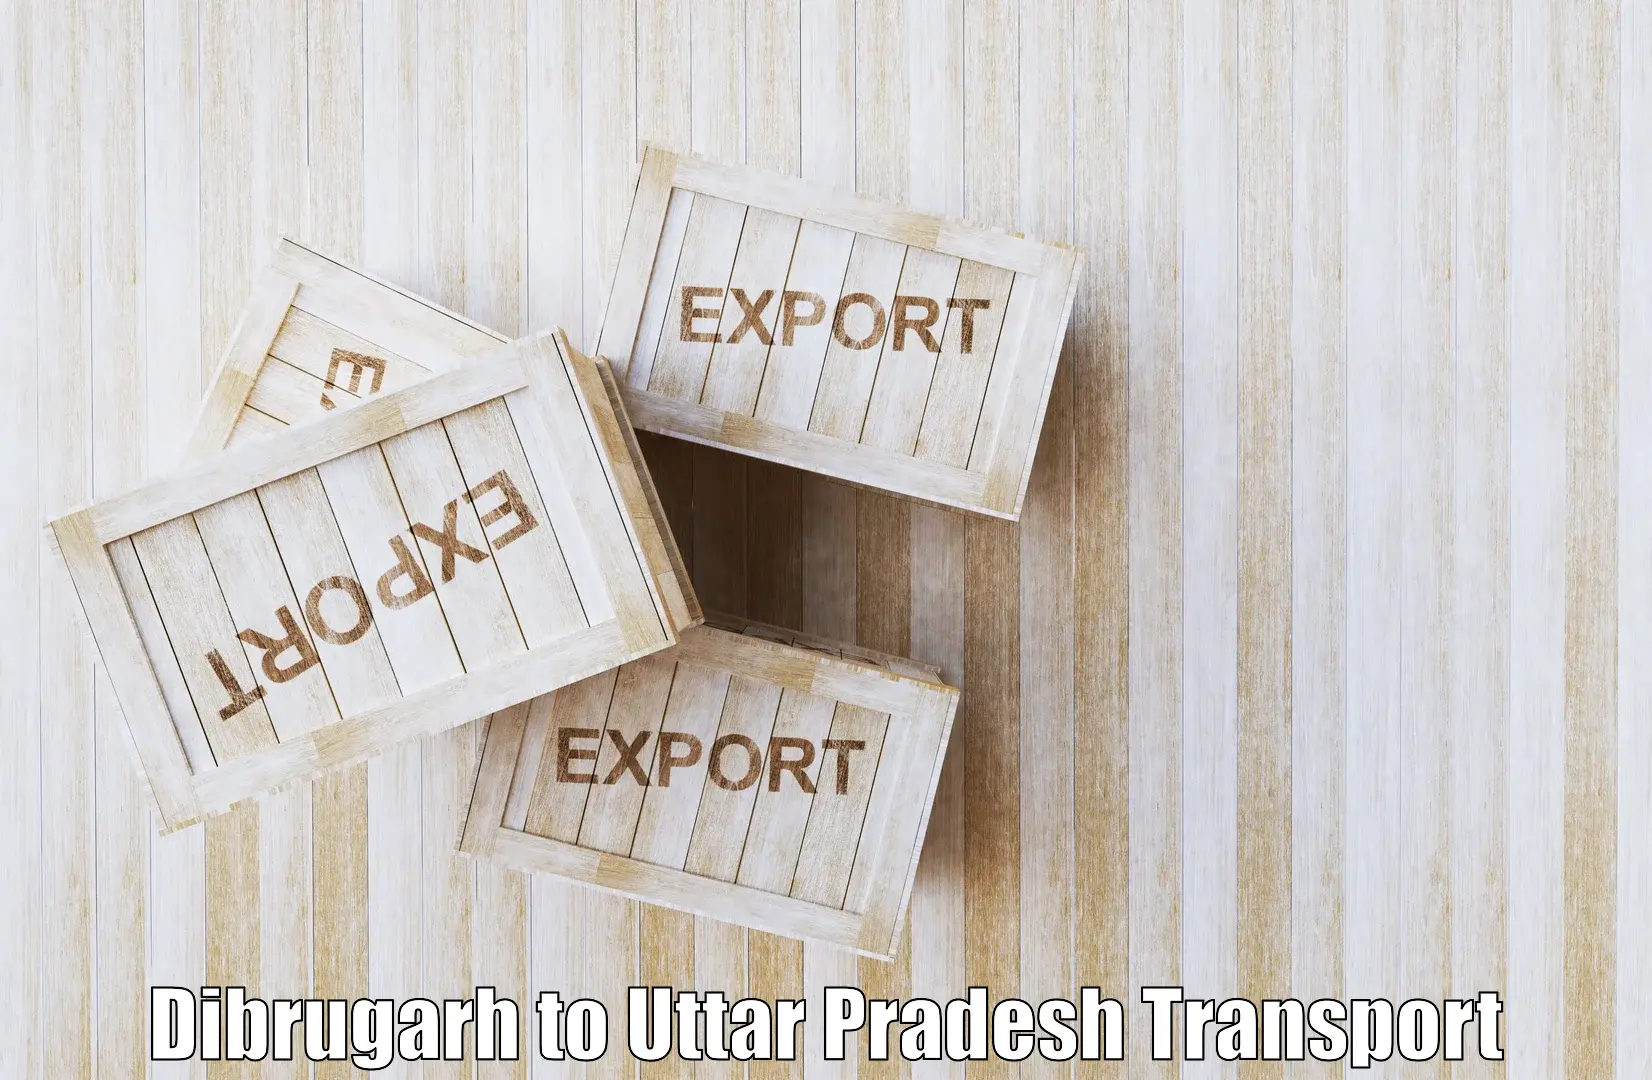 Best transport services in India Dibrugarh to Itava